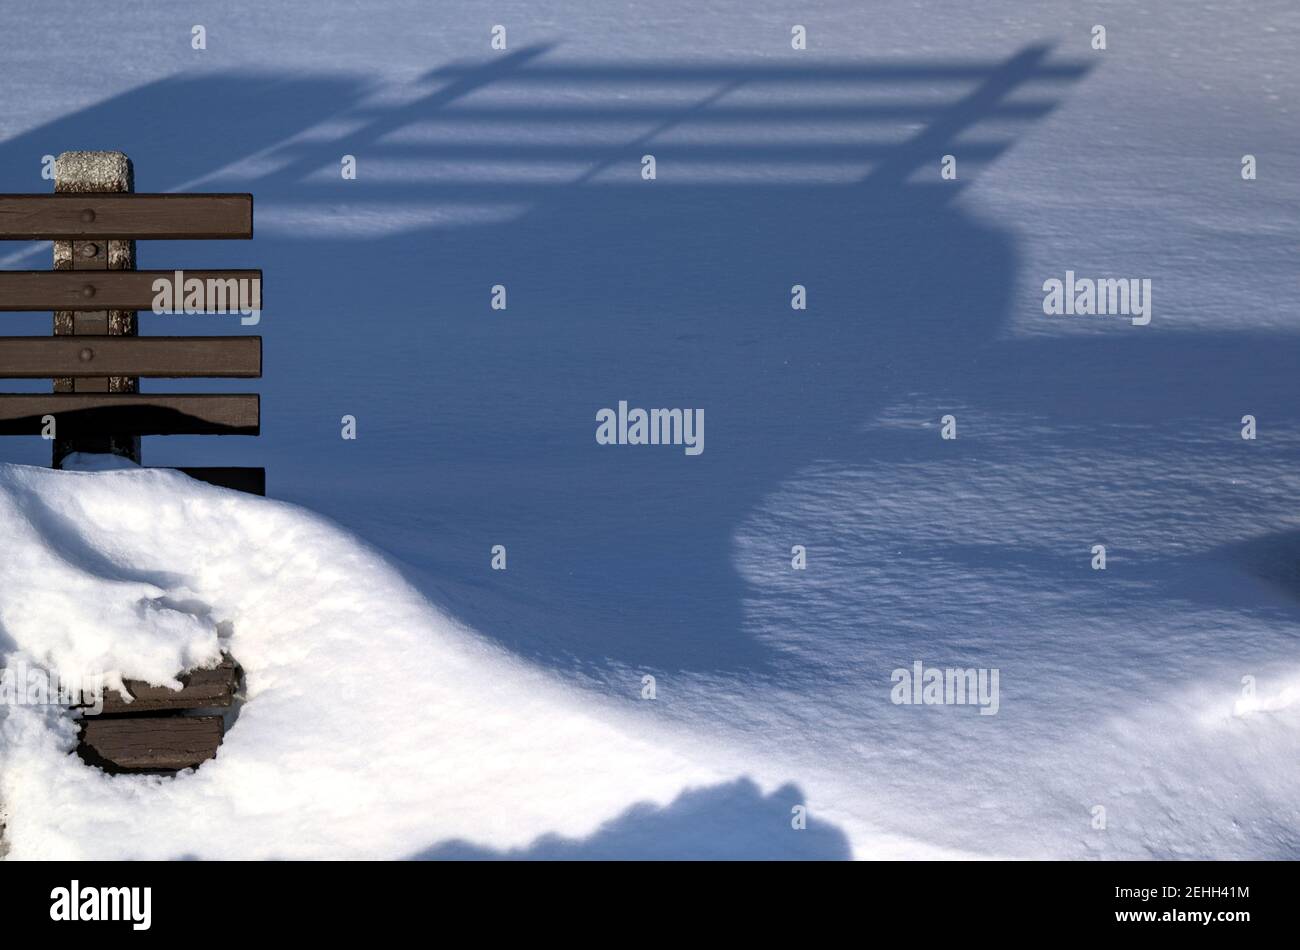 Das Leben in einer kalten Stadt - Schneelandschaften von Ottawa - Parkbank kämpfen, um seinen Kopf über dem Schnee zu halten. Ontario, Kanada. Stockfoto